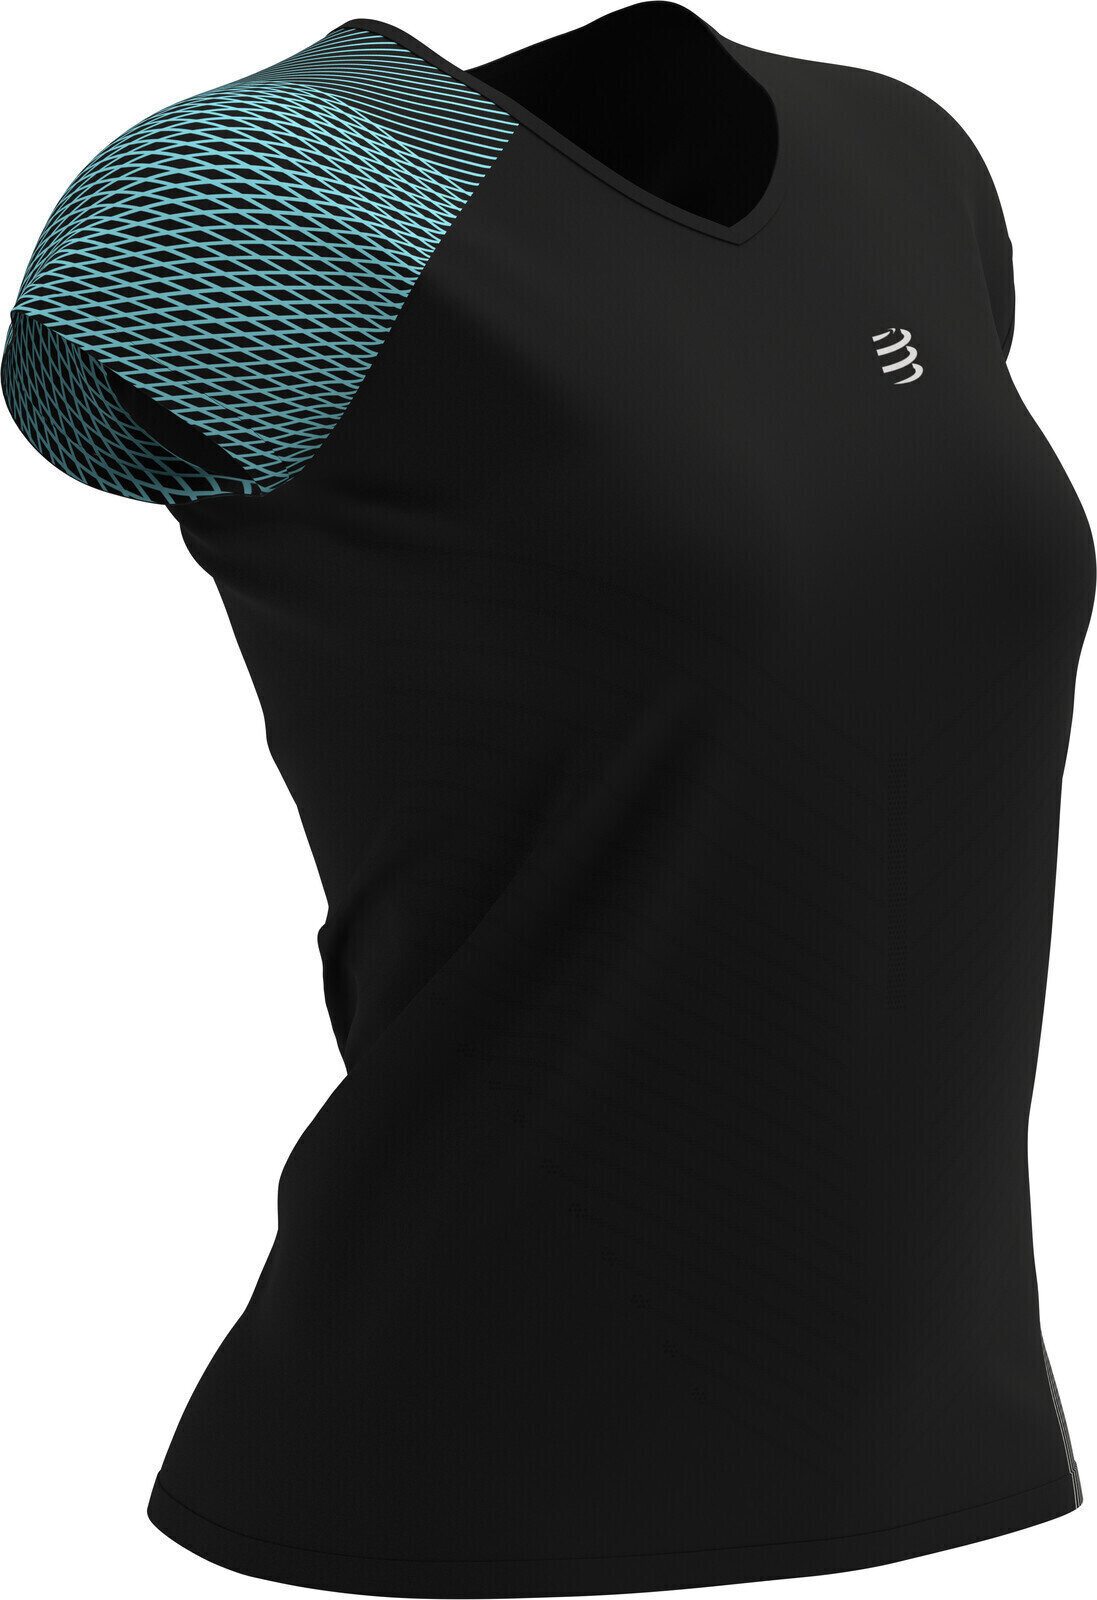 Löpartröja med kort ärm Compressport Performance T-Shirt Black L Löpartröja med kort ärm